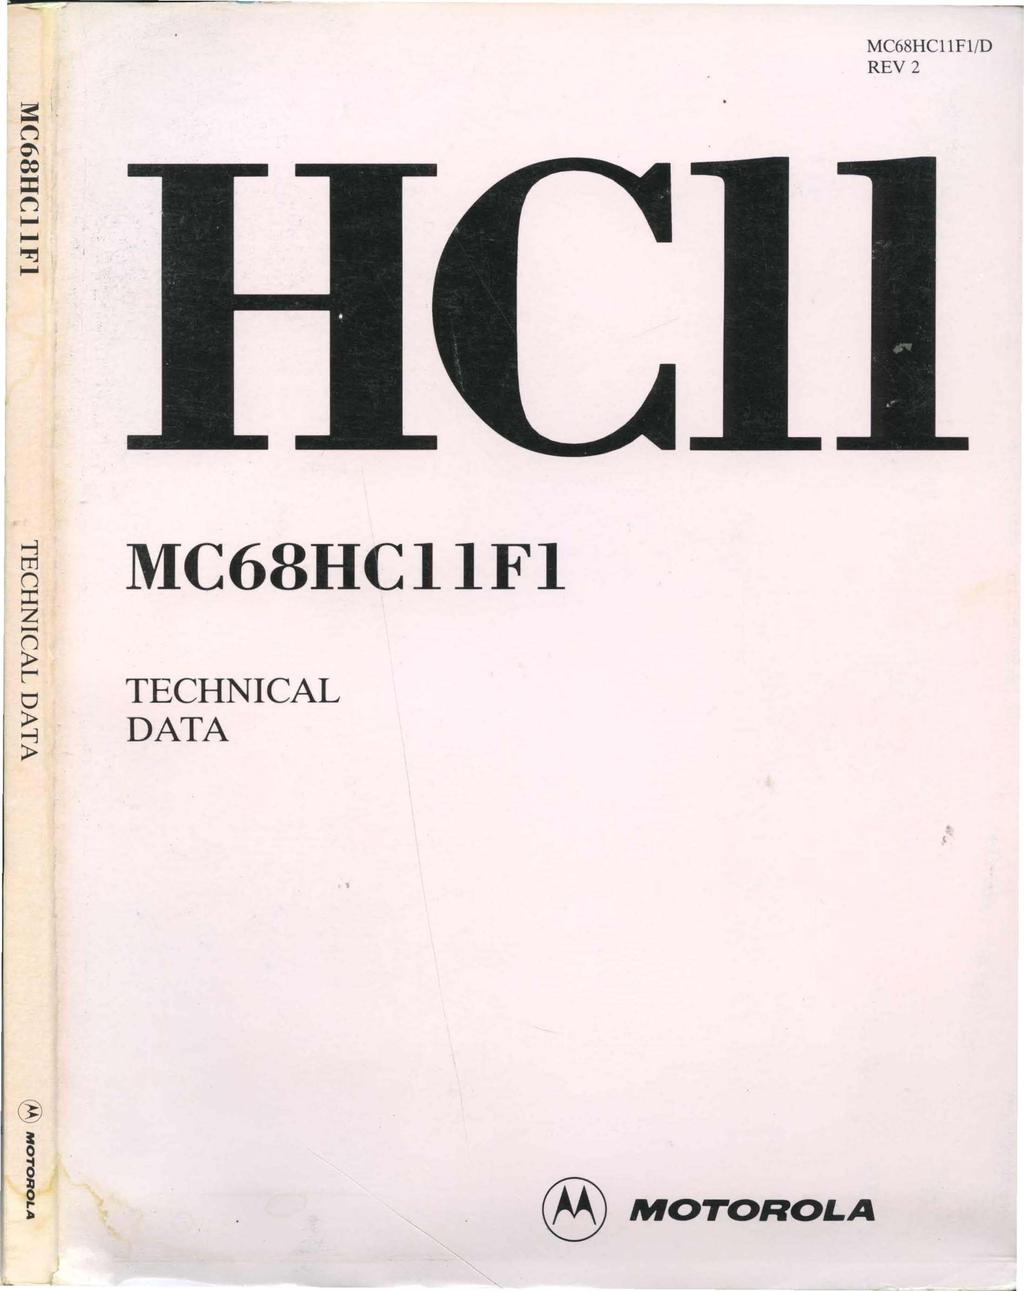 MC68HCIIFI/D REV 2